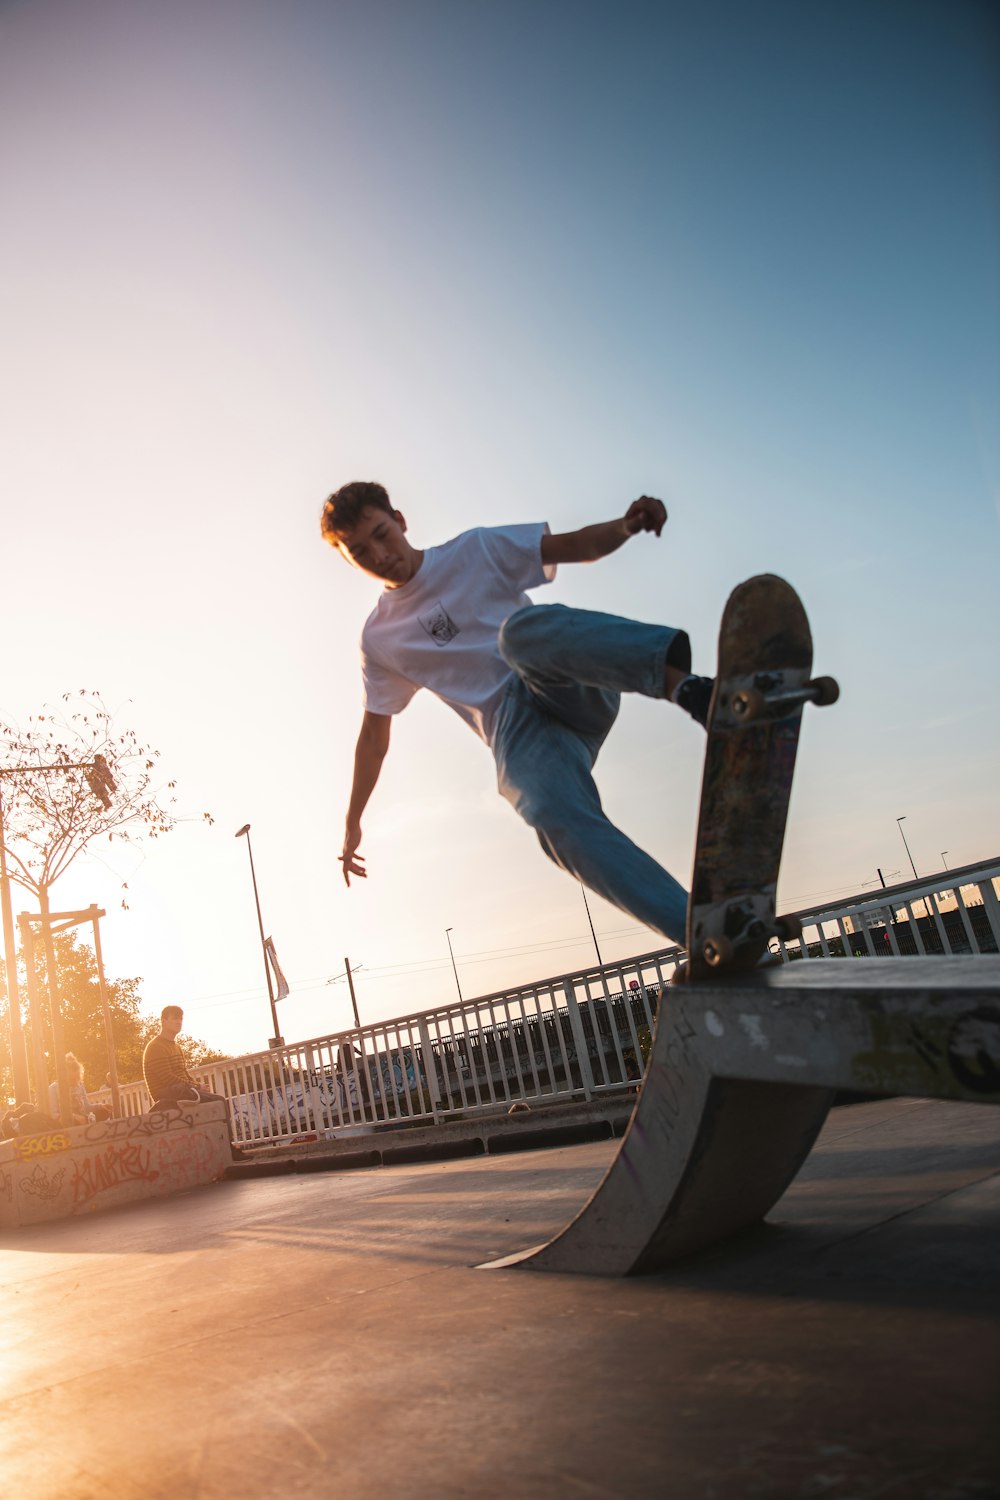 man playing skateboard on ramp